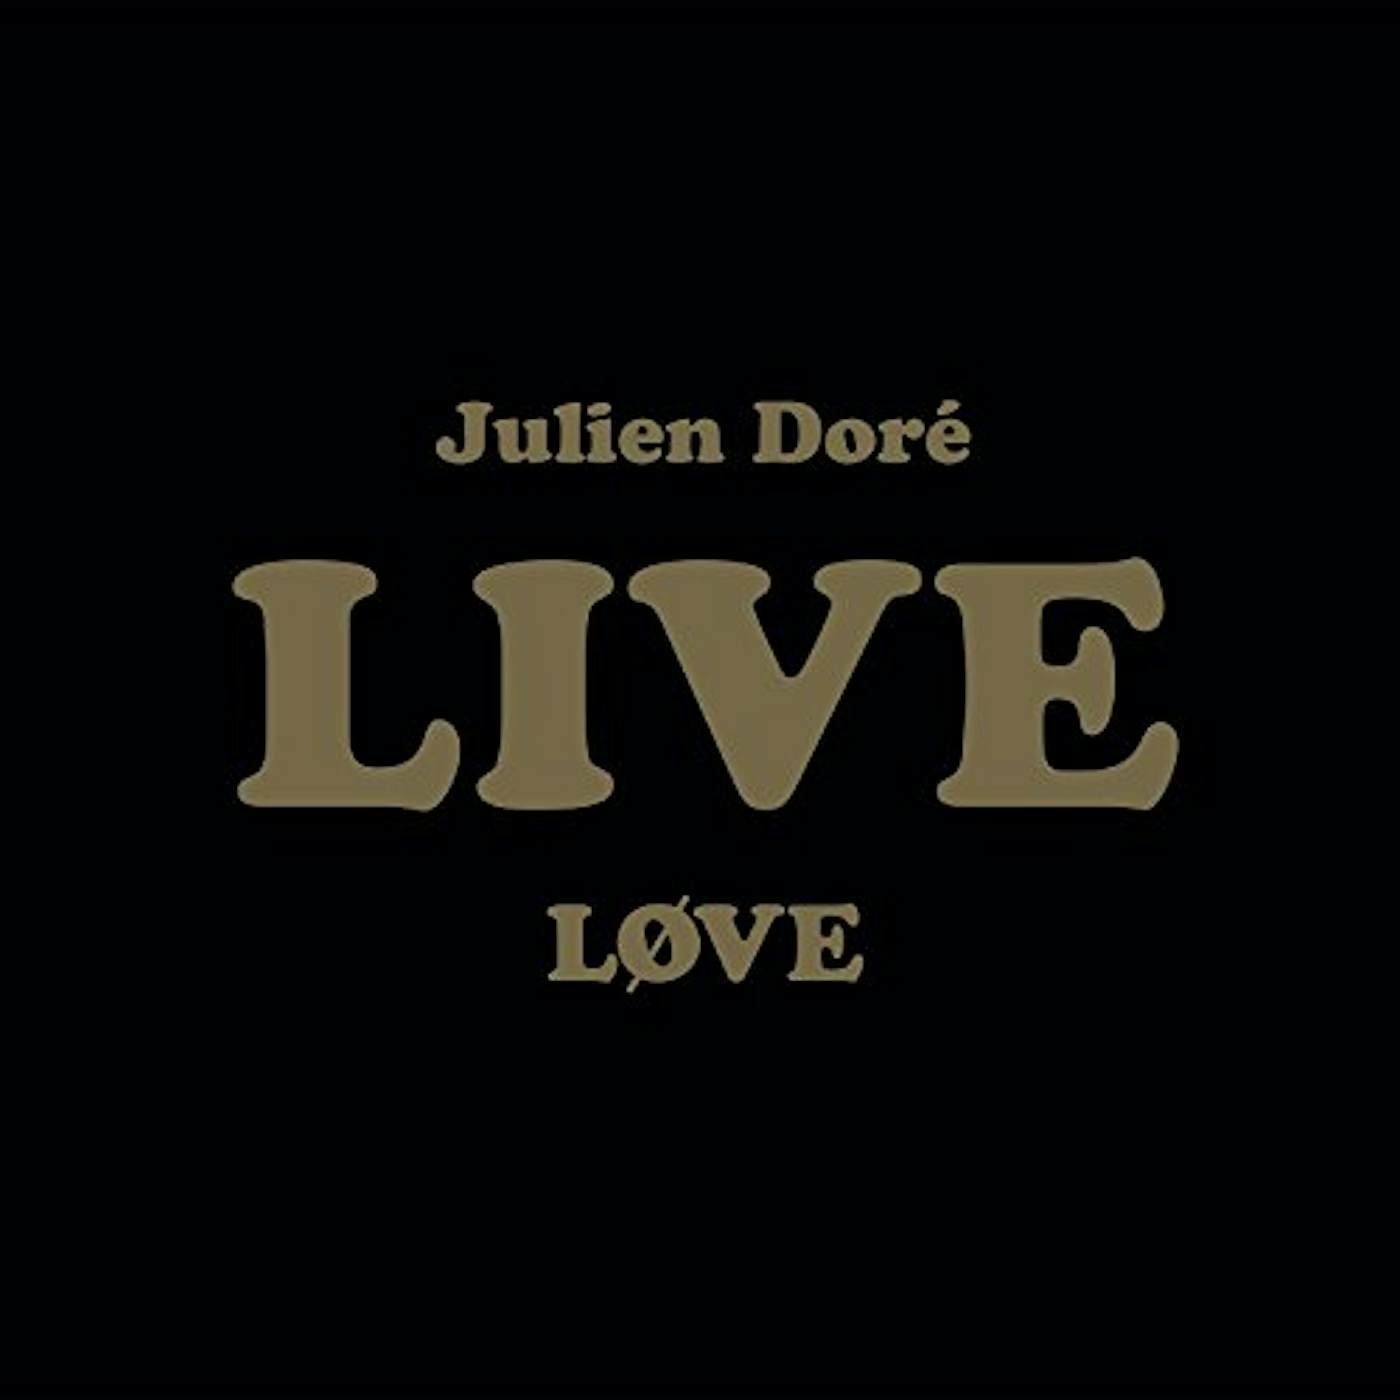 Julien Doré LOVE LIVE CD